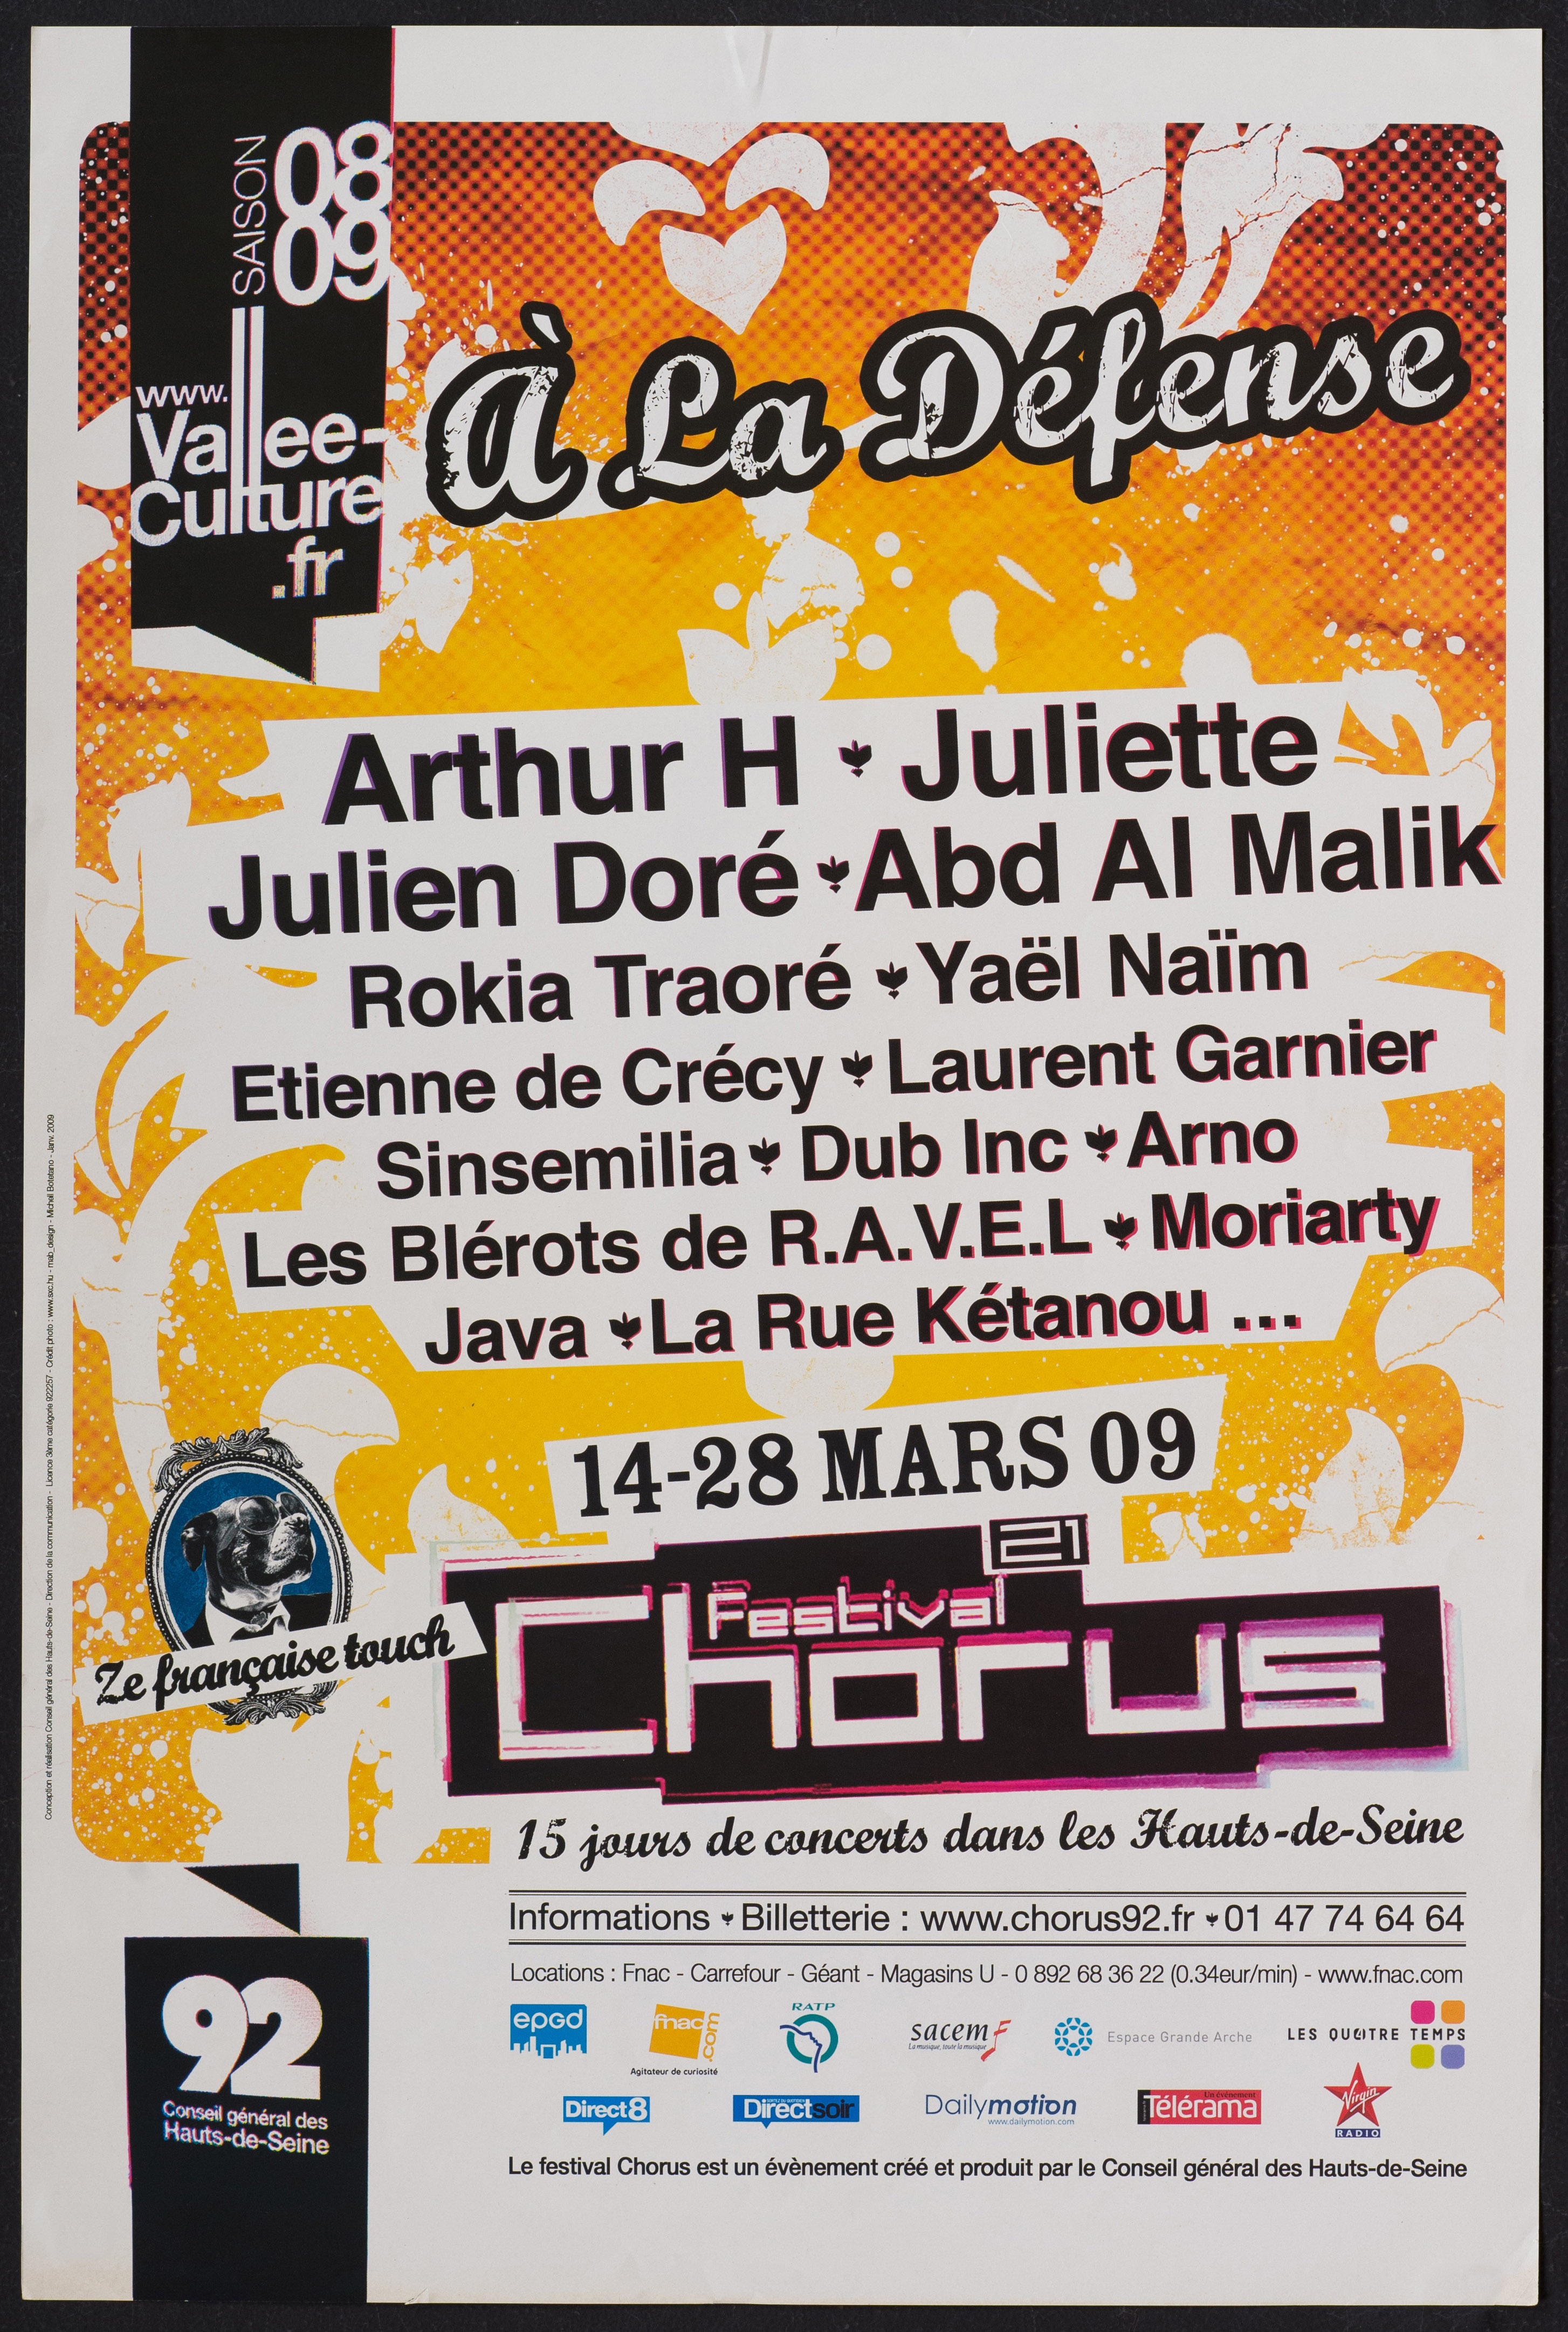 Vallée de la Culture. Saison 08-09. A la Défense [liste des artistes] Festival chorus 21e édition 14-28 mars 09 […]. - CG 92, 2009. - 1 affiche ill. coul., 60 x 40 cm.